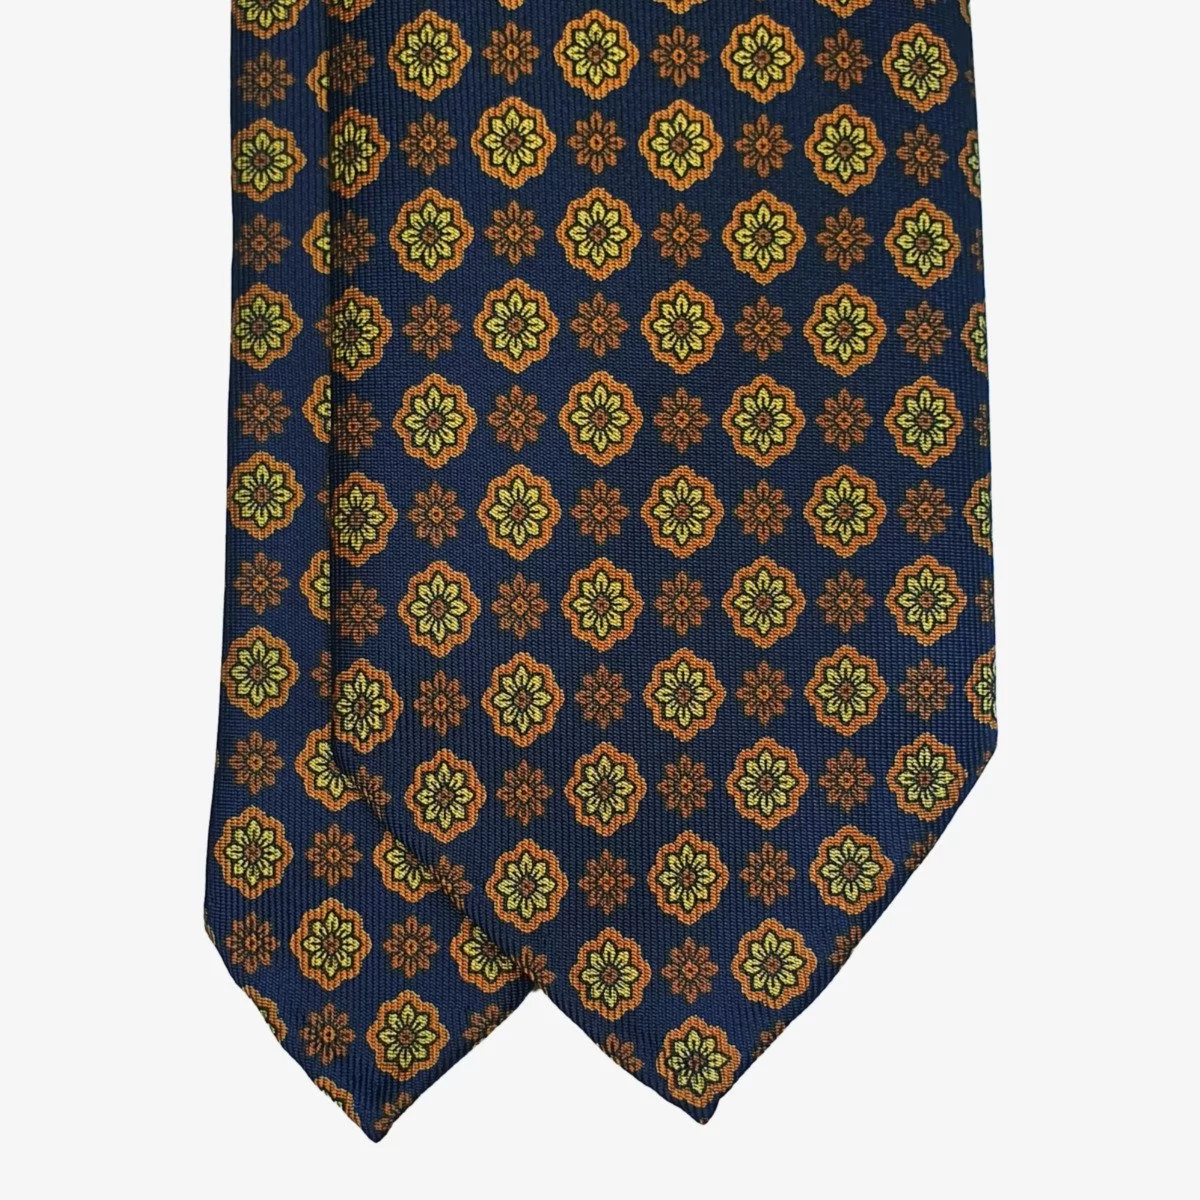 Shibumi Firenze navy blue silk tie with yellow flowers